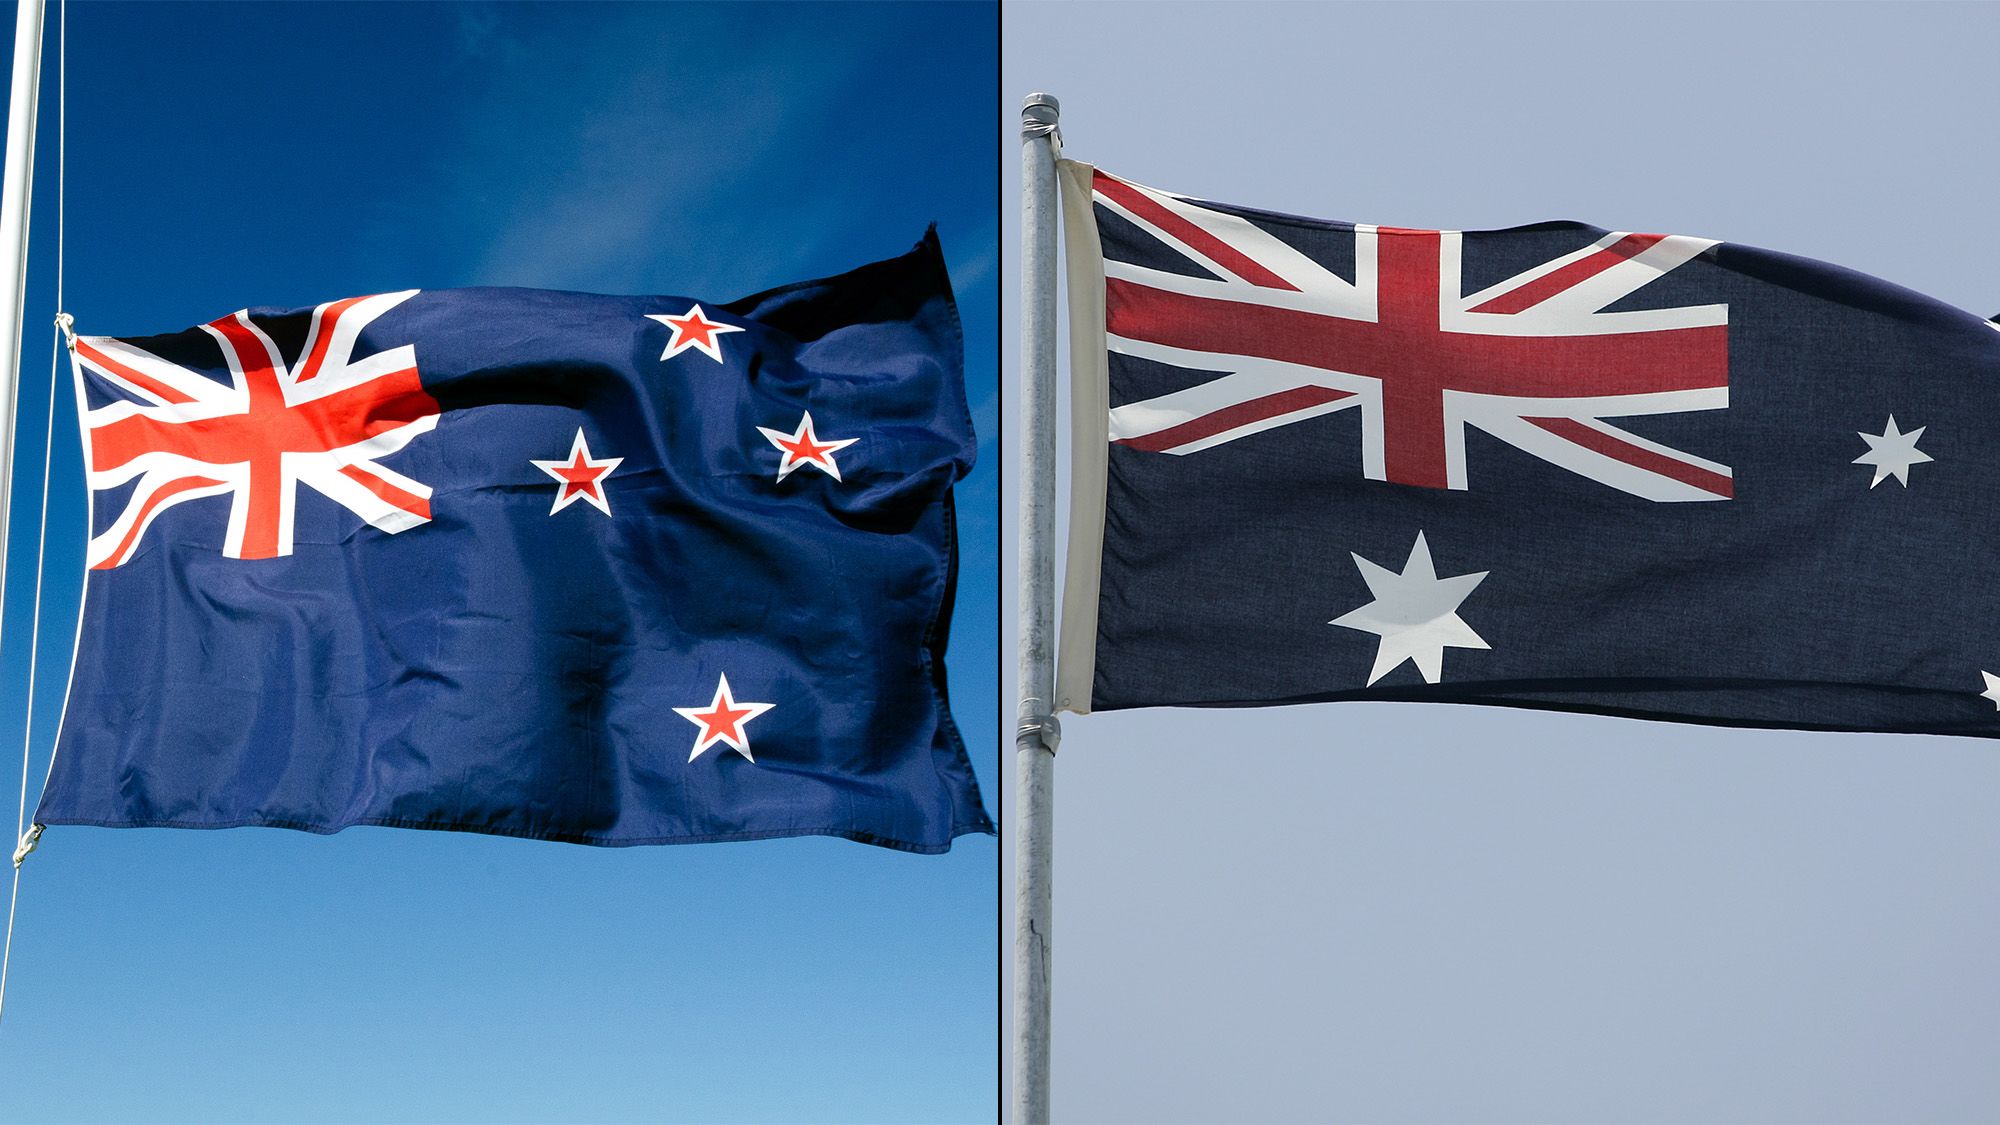 Hvile supplere skam New Zealand tells Australia: Stop 'copying' our flag | CNN